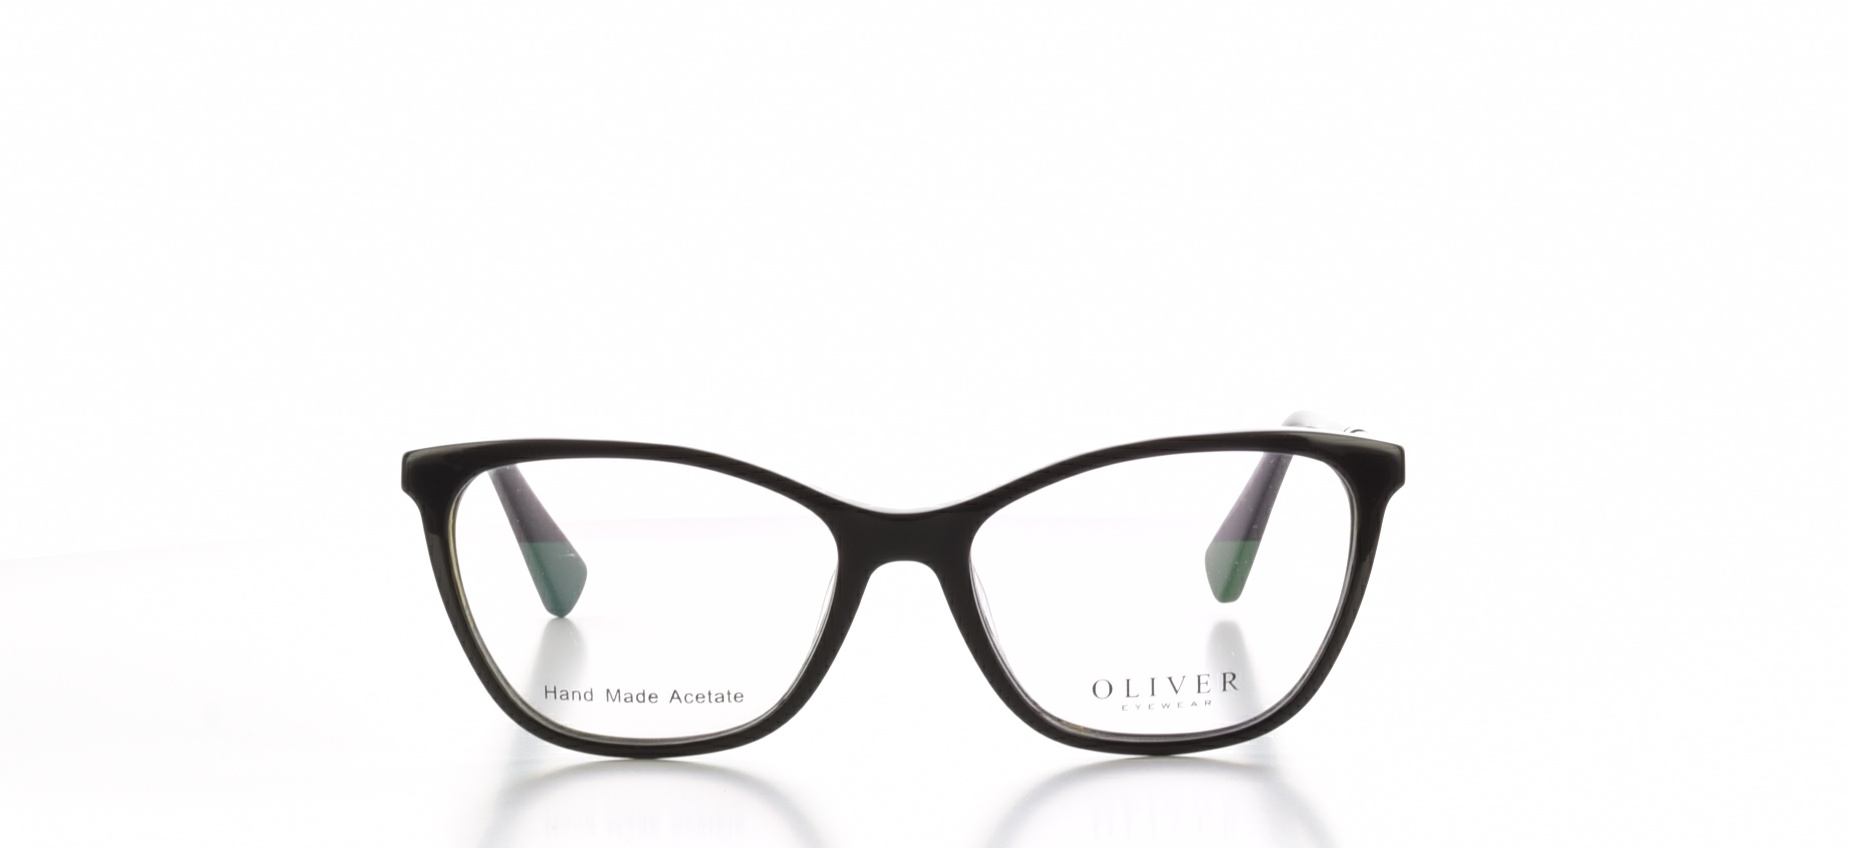 Rma ochelari vedere Oliver